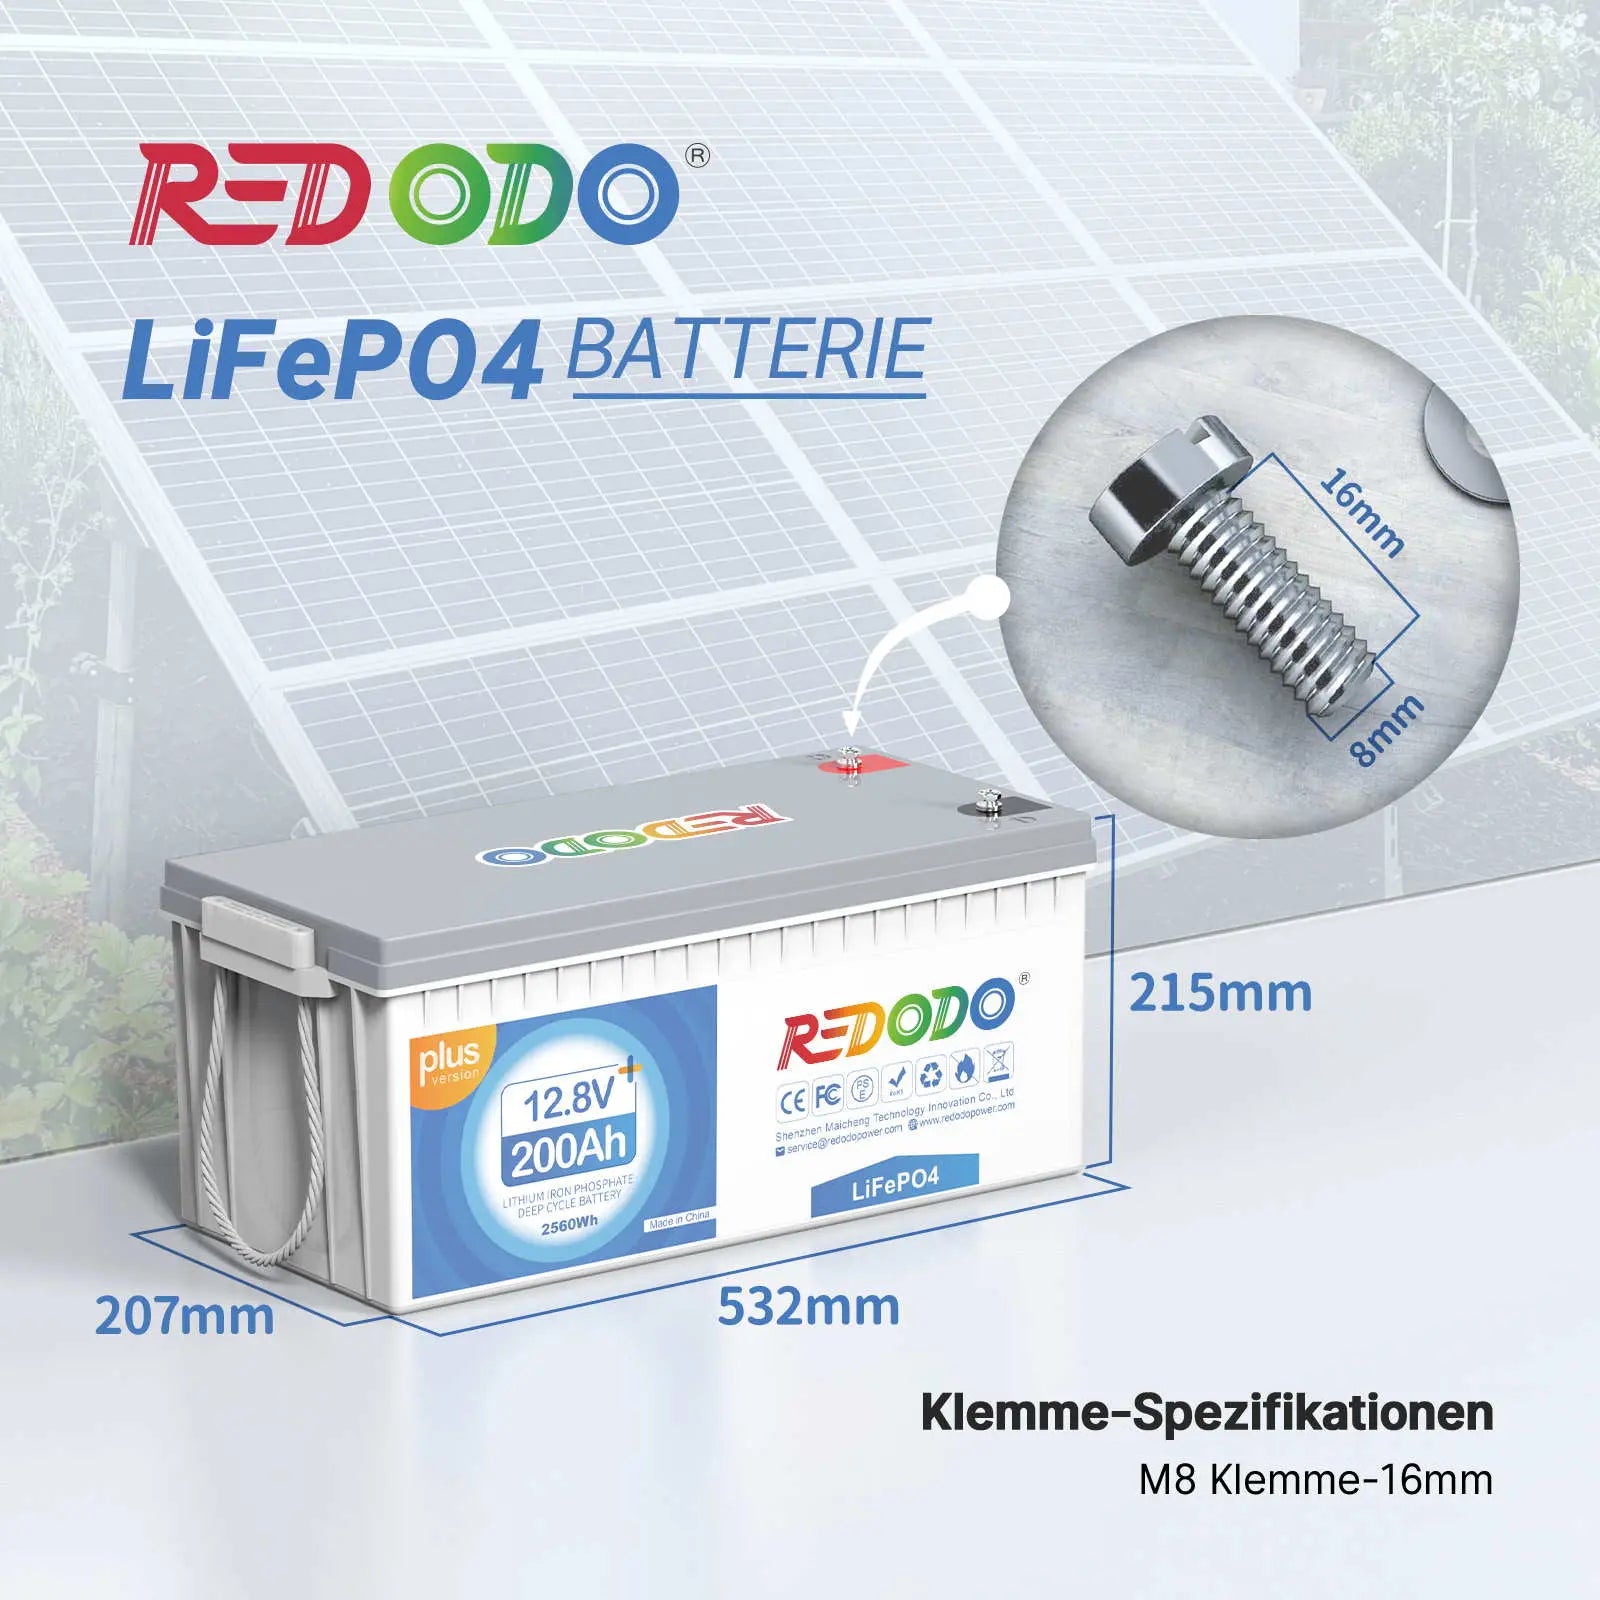 Redodo LiFePO4 200Ah Plus Accu 12V | 2,56kWh & 2,56kW